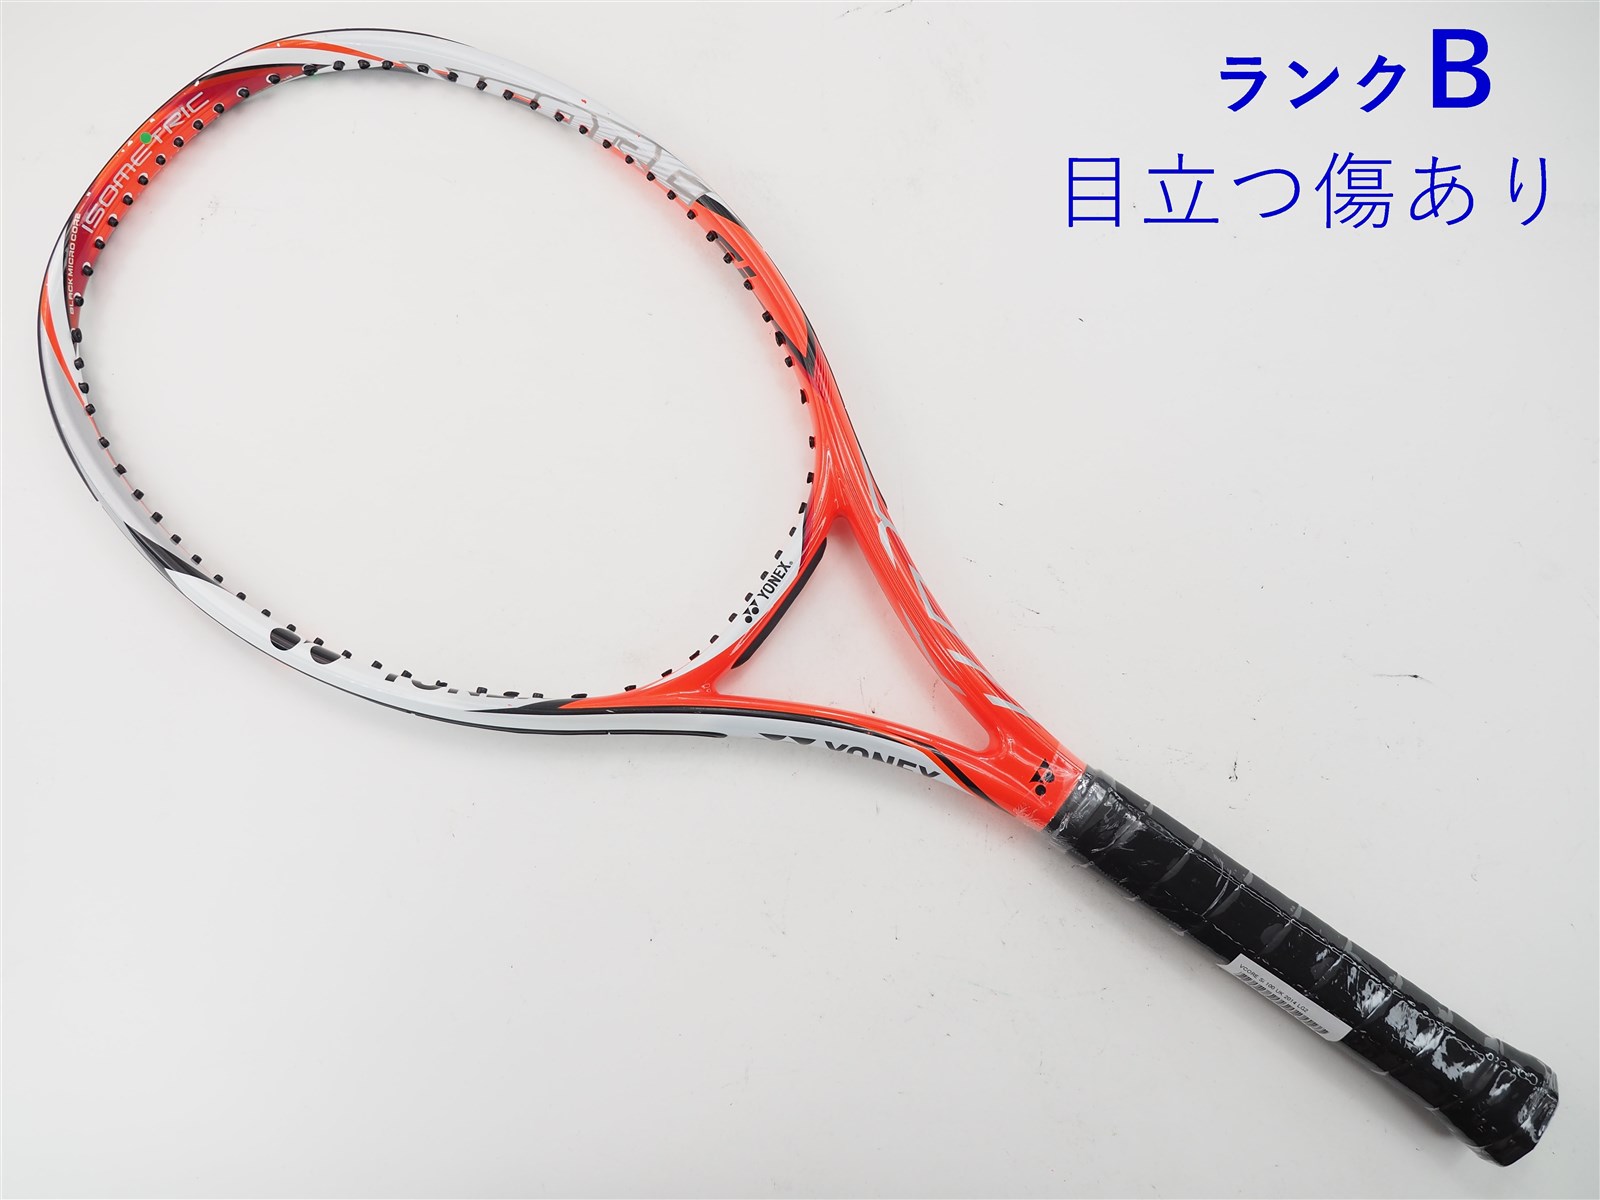 テニスラケット ヨネックス ブイコア エスブイ 100エス 2016年モデル